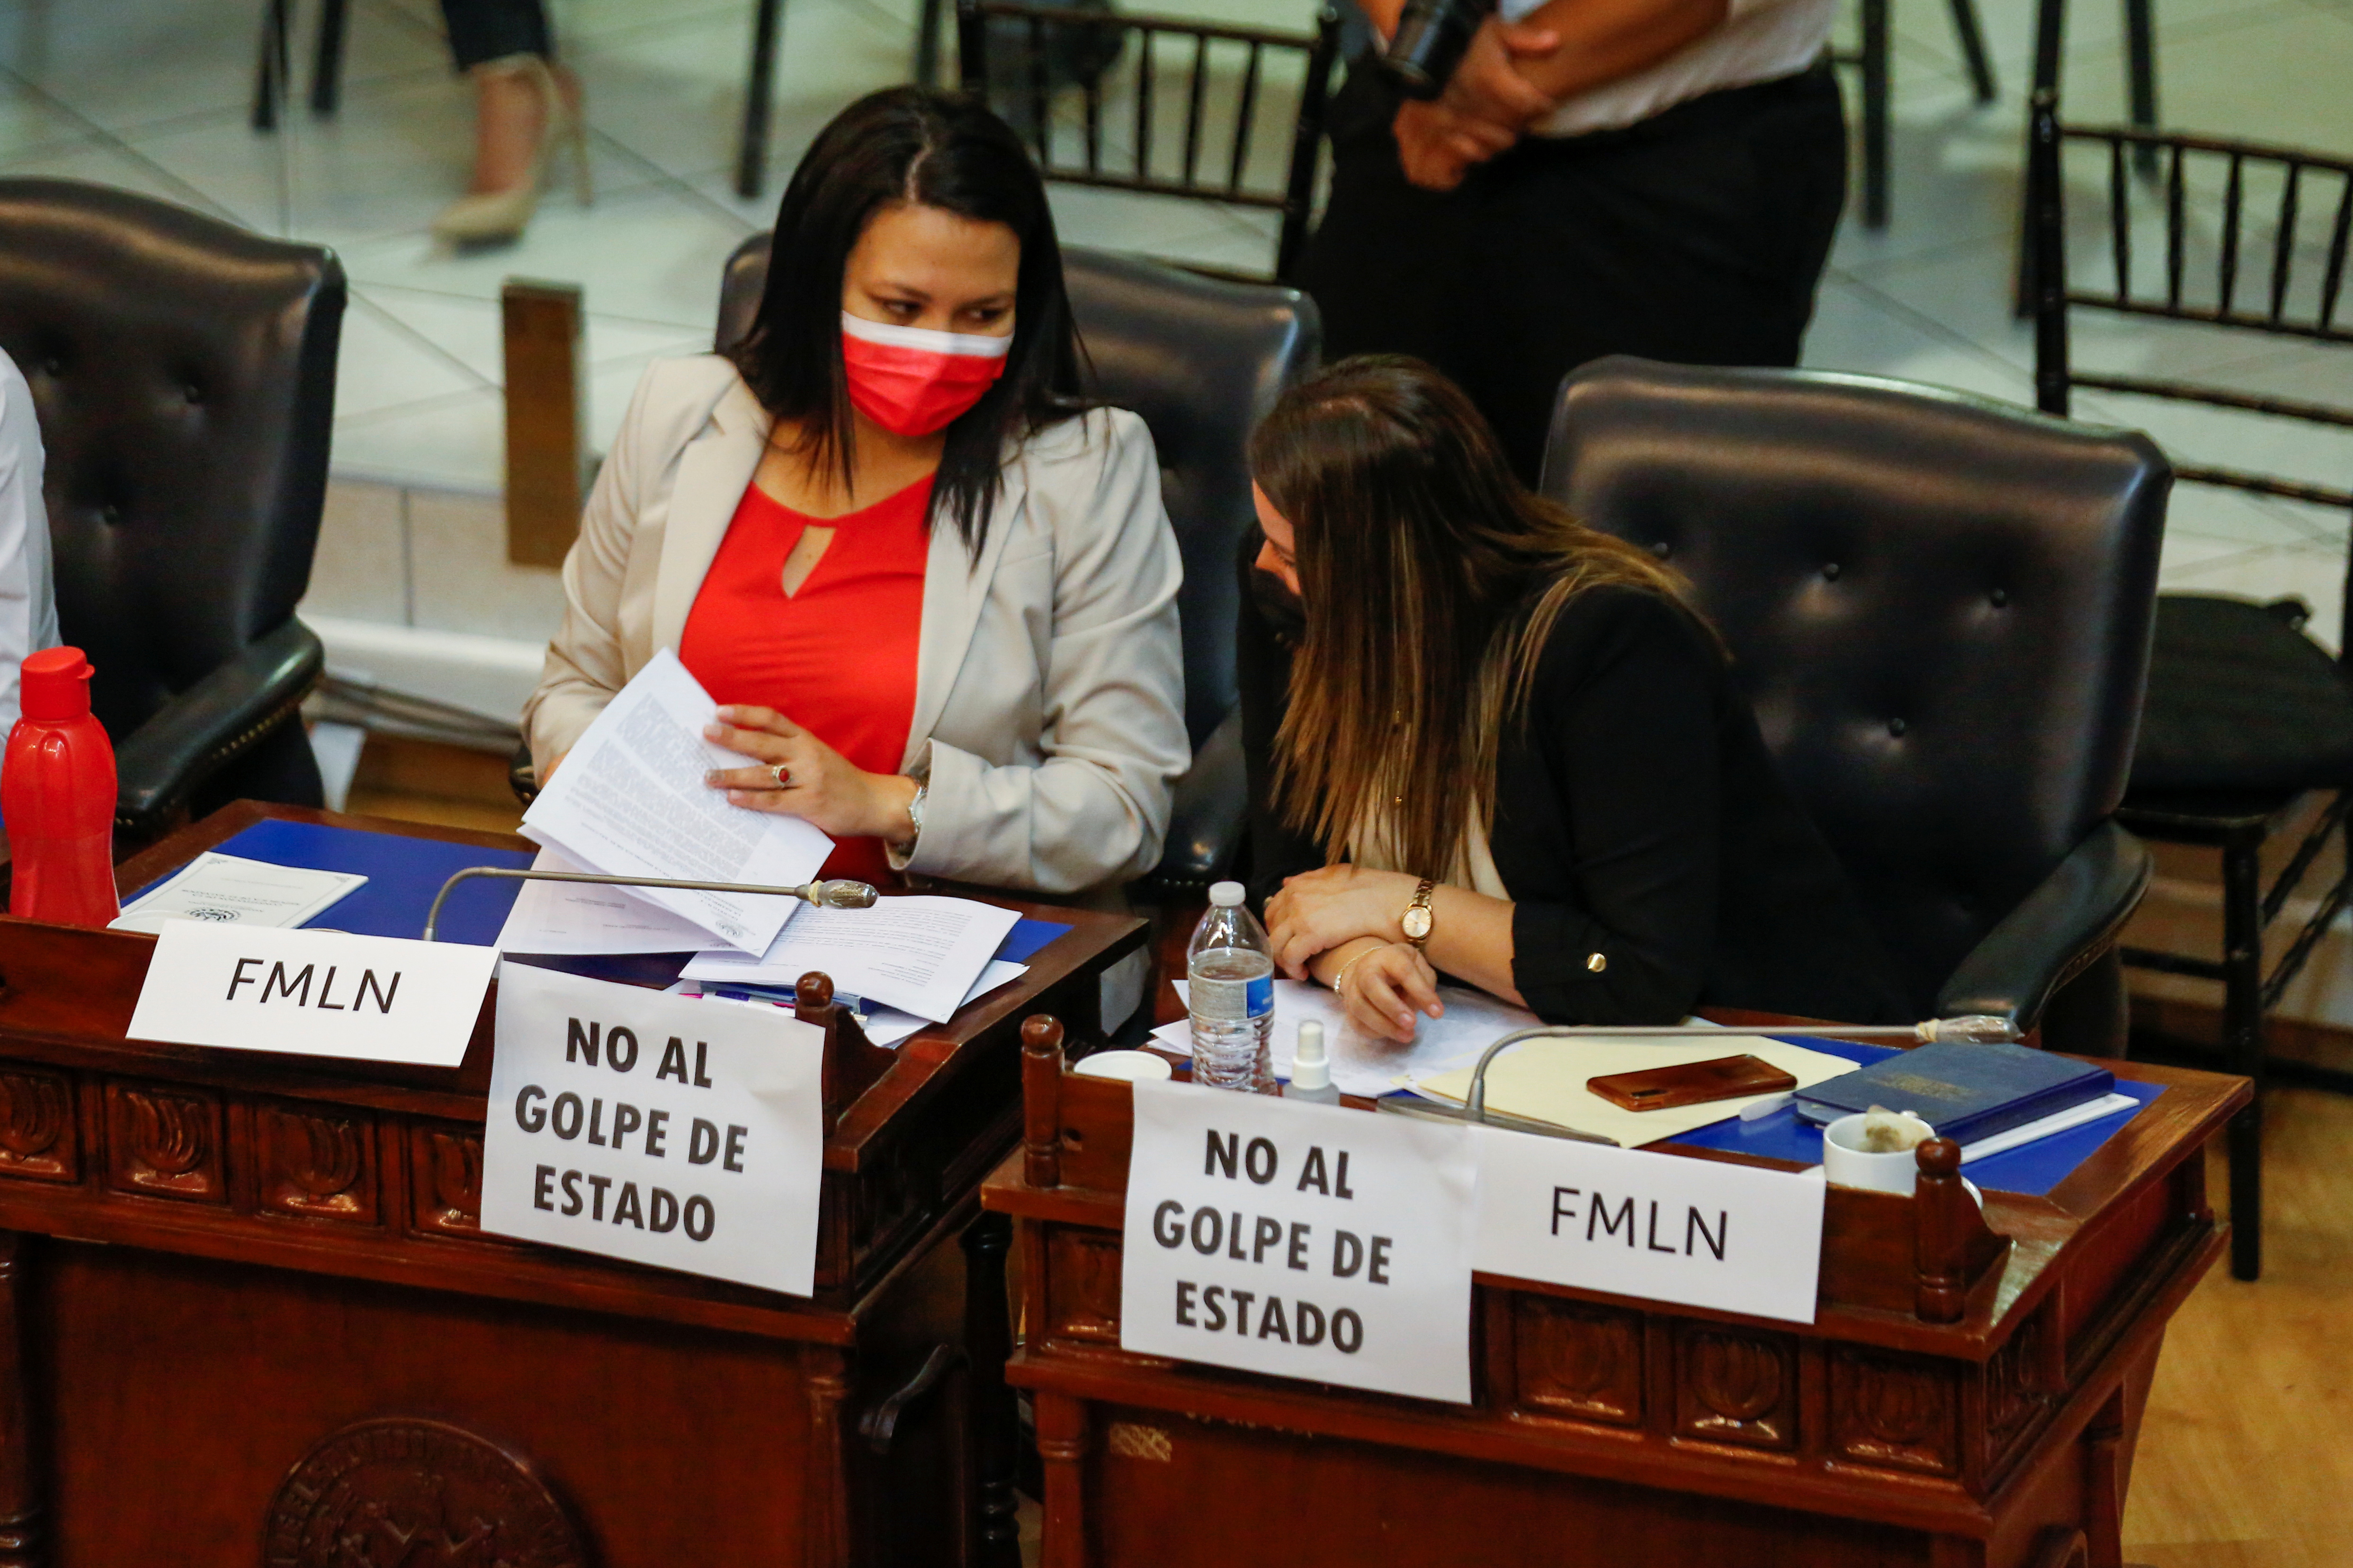 Representantes de la oposición muestran pancartas en las que se leía "No al golpe de Estado", mientras participan en una sesión para discutir la destitución de magistrados de la Corte Suprema en el Congreso salvadoreño, en San Salvador, El Salvador, el 1 de mayo de 2021. REUTERS/Jose Cabezas